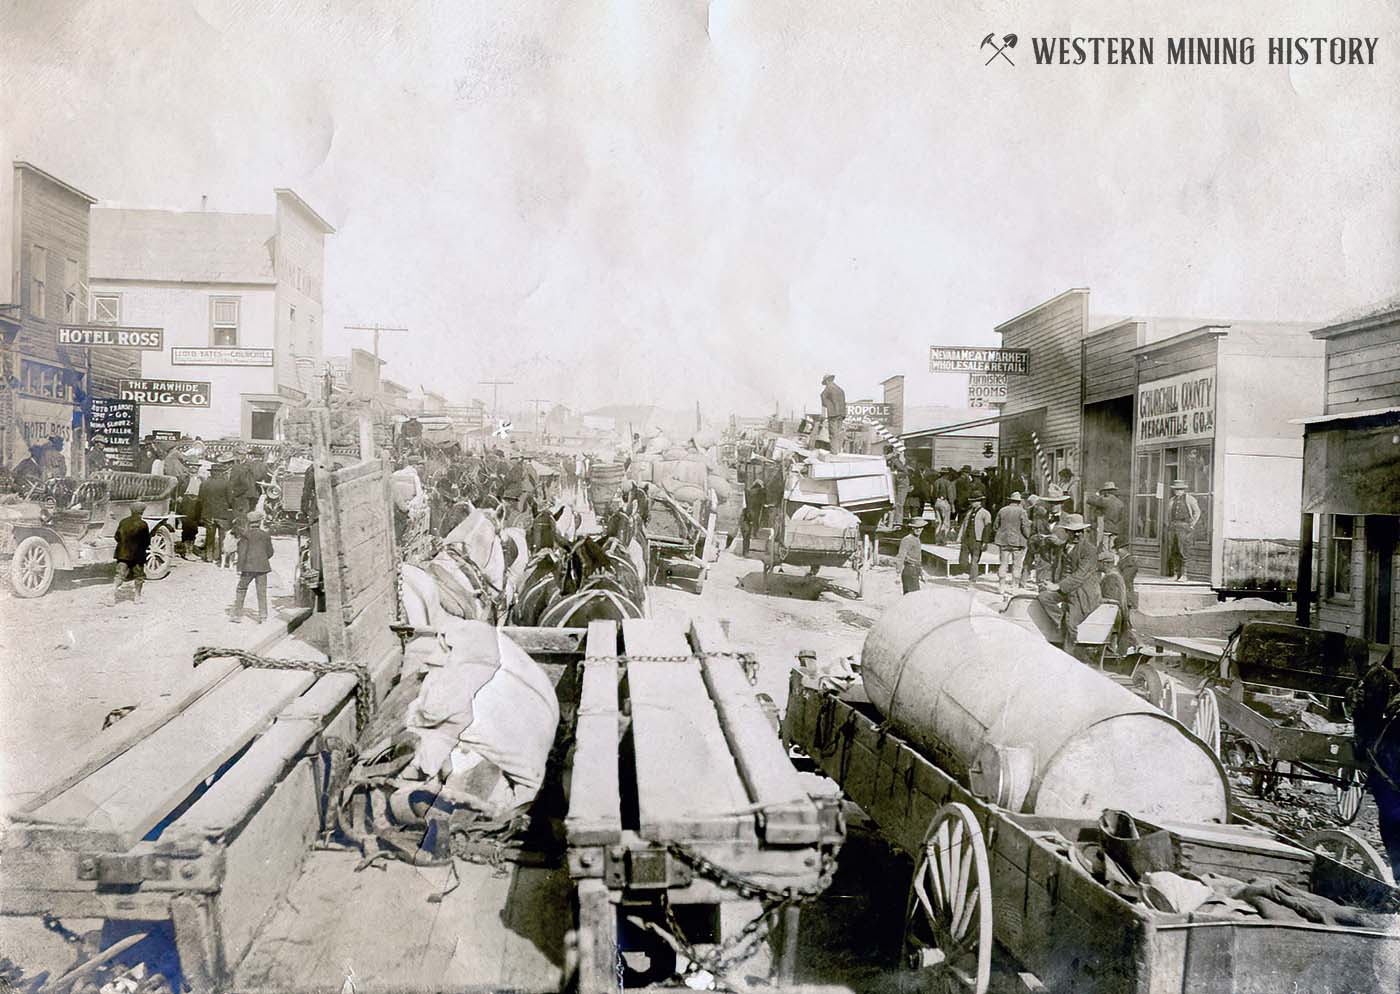 Rawhide, Nevada March 15 1908